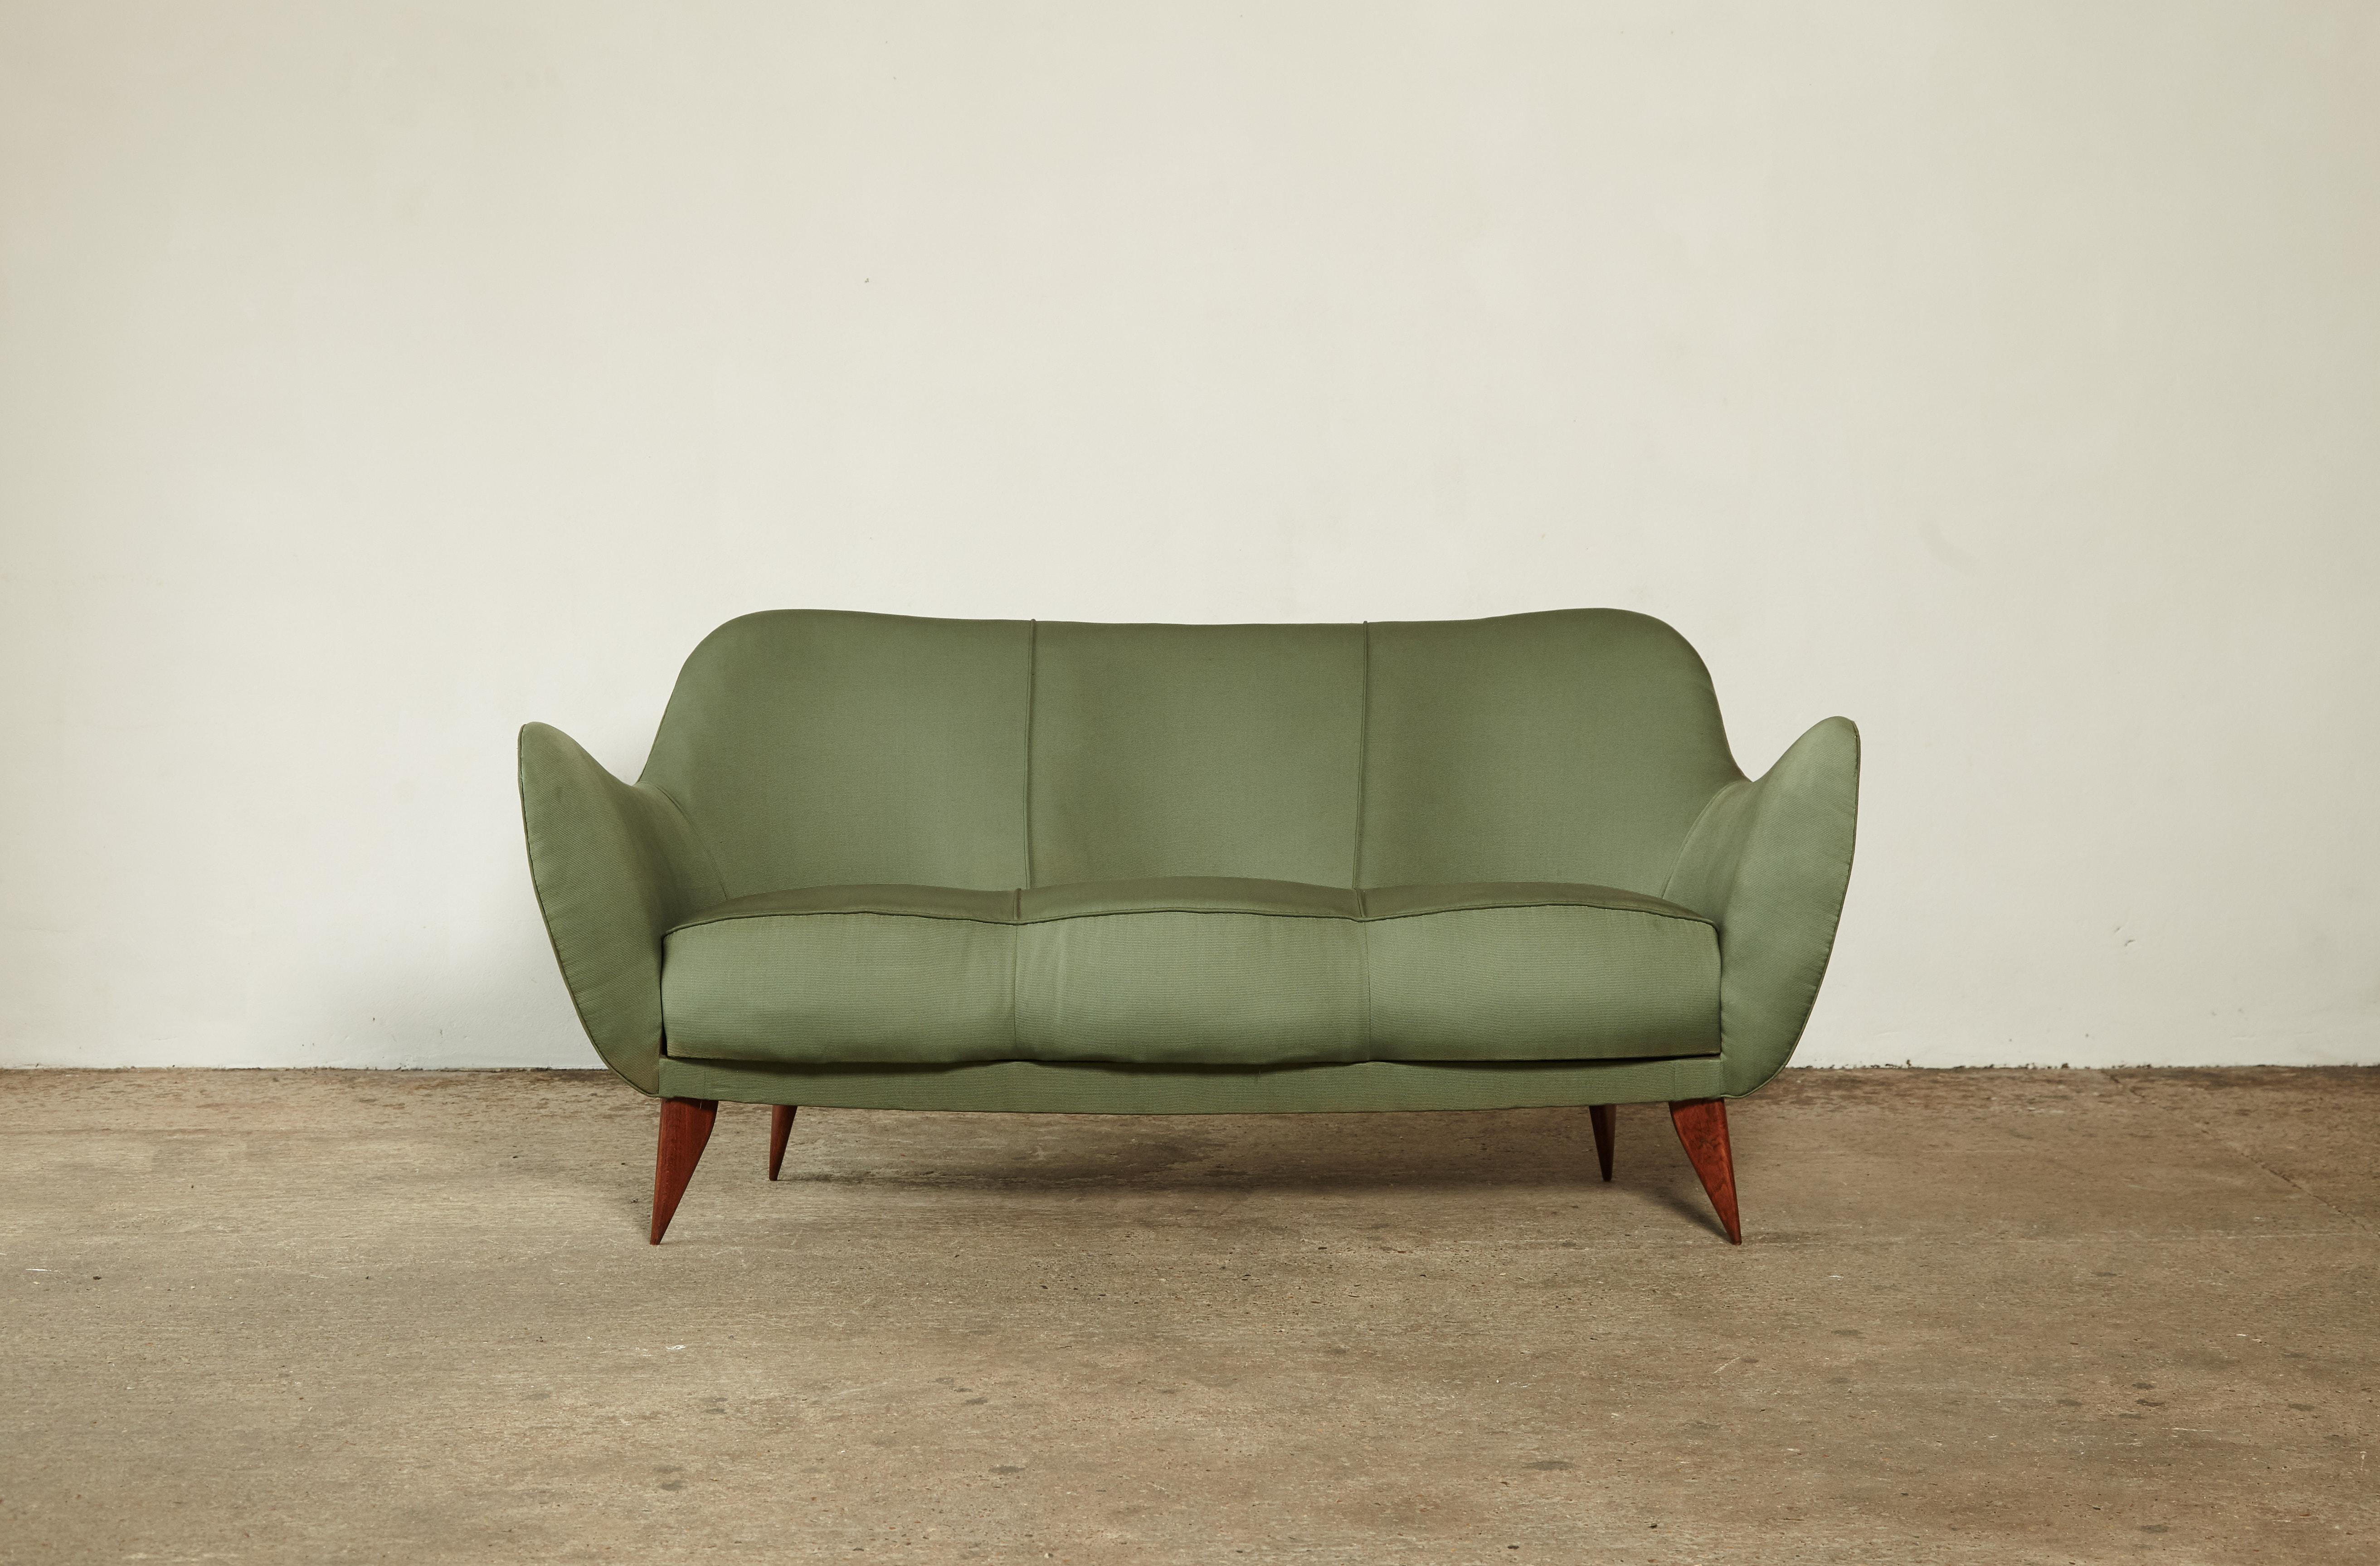 Ein seltenes 3-Personen-Sofa Giulia Veronesi Perla, hergestellt von ISA Bergamo, Italien 1950er Jahre. Mit Markierungen versehen. Grüner Originalstoff in recht gutem Zustand mit geringen Gebrauchs- und Abnutzungsspuren.  Geeignet für die